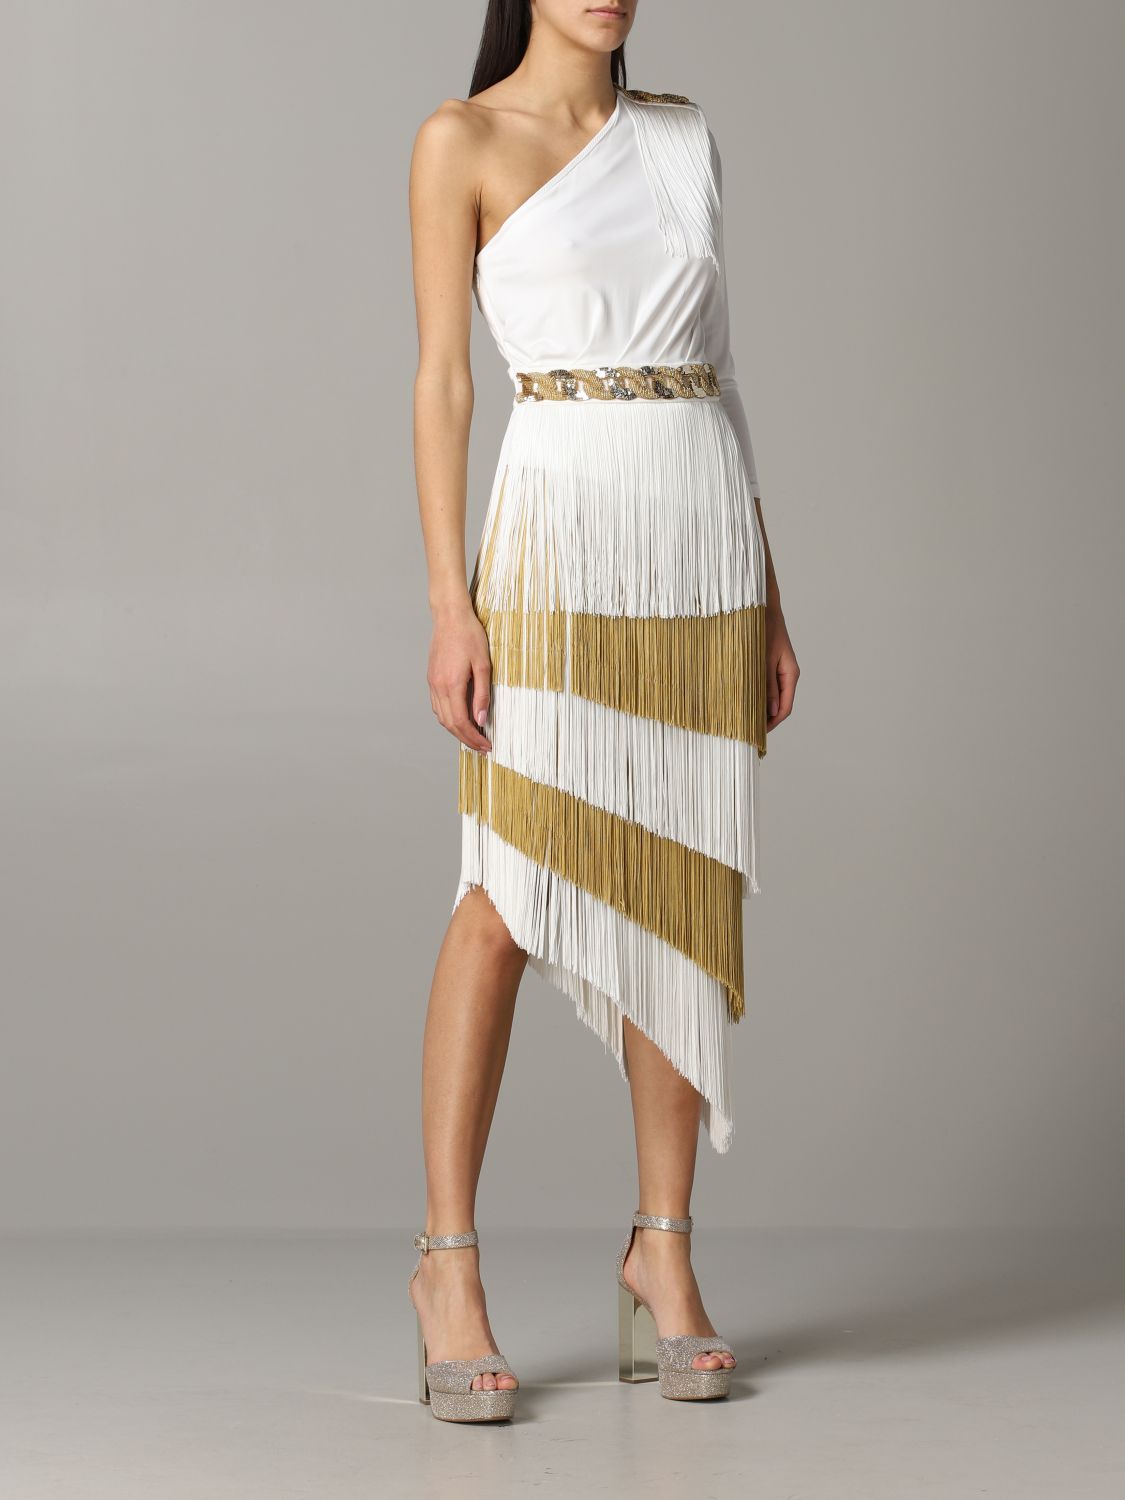 Elisabetta Franchi Outlet: one-shoulder dress with fringes | Dress